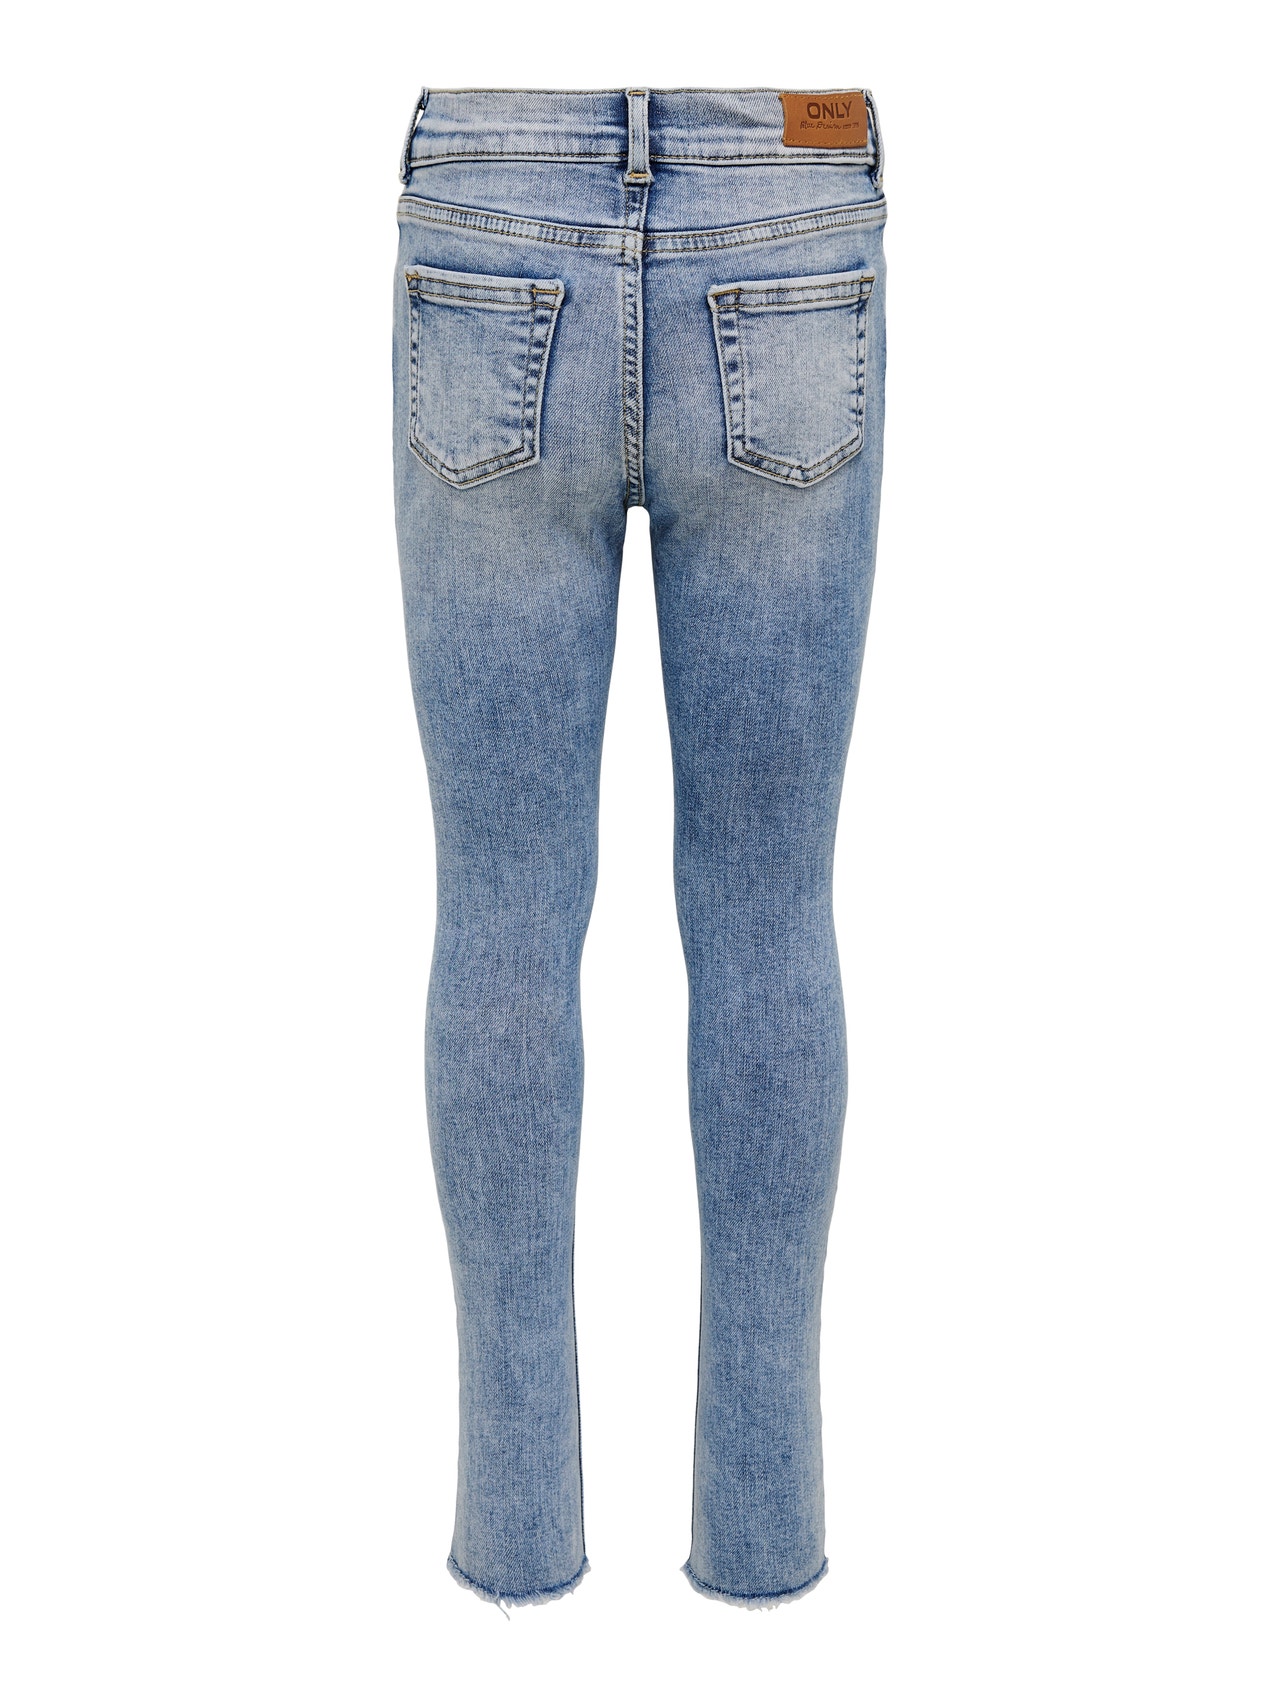 ONLY KONBlush Skinny Light Blue Jeans -Light Blue Denim - 15222975